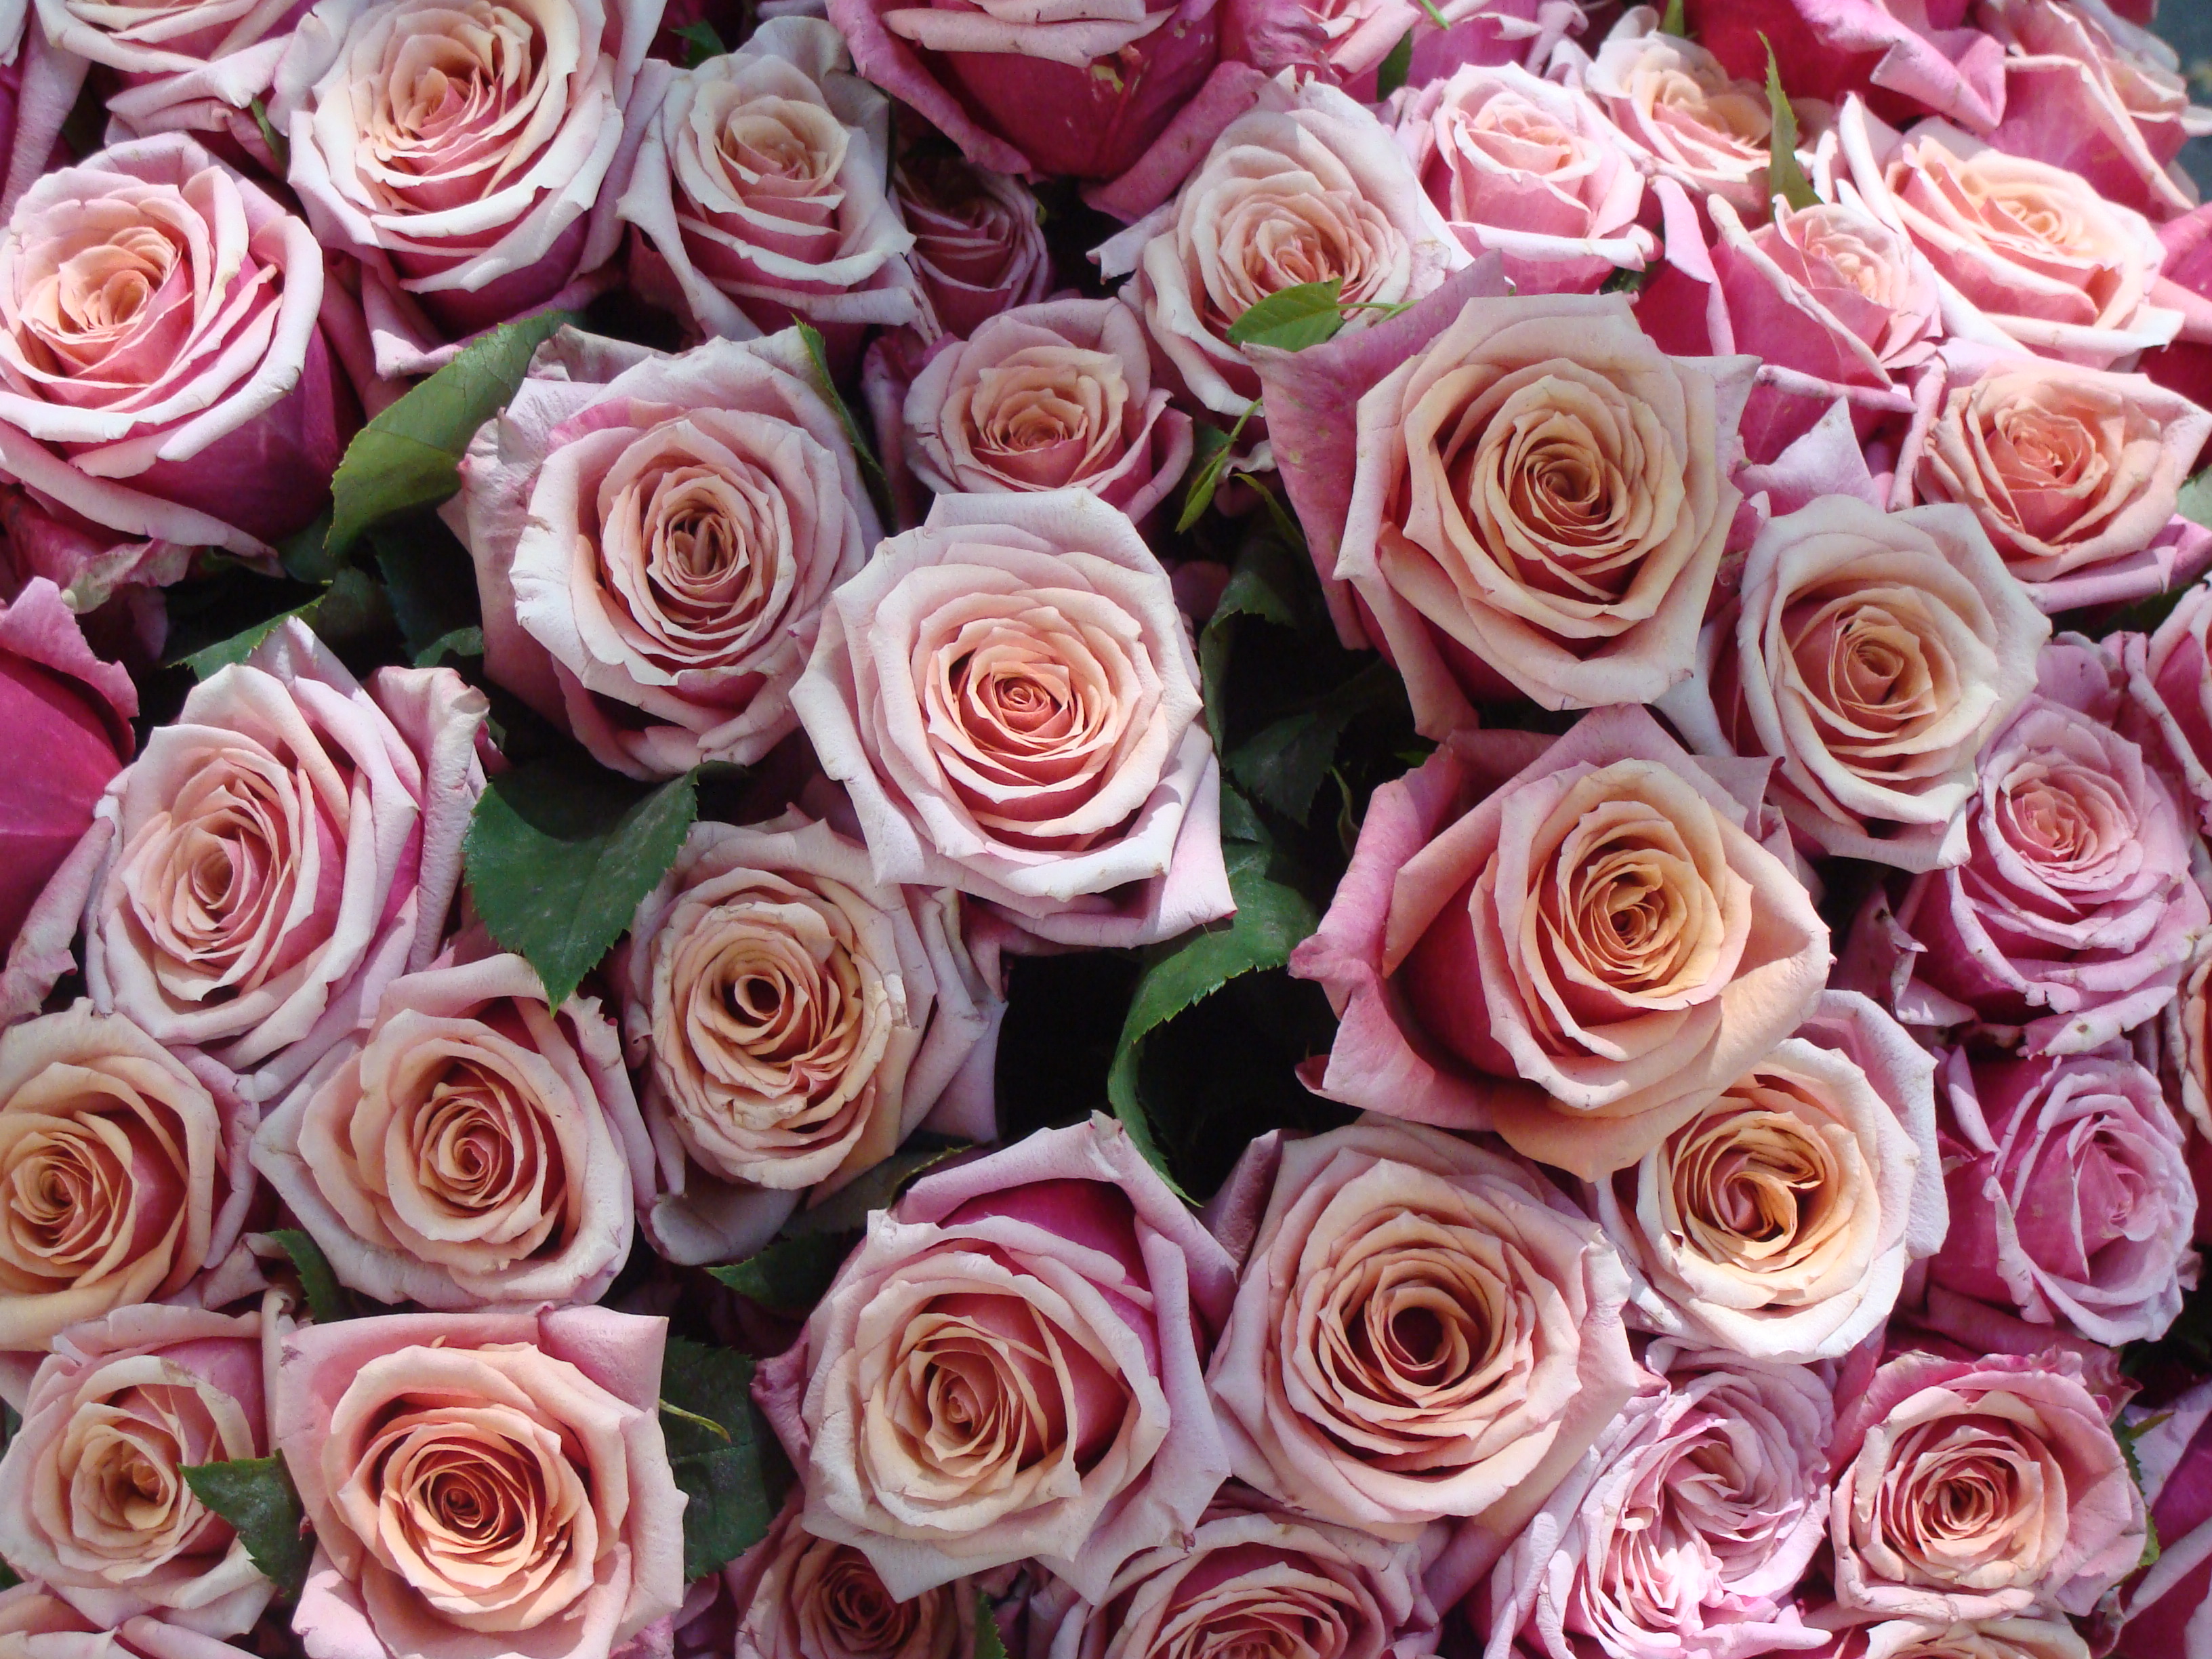 Bouquet de roses roses.jpg